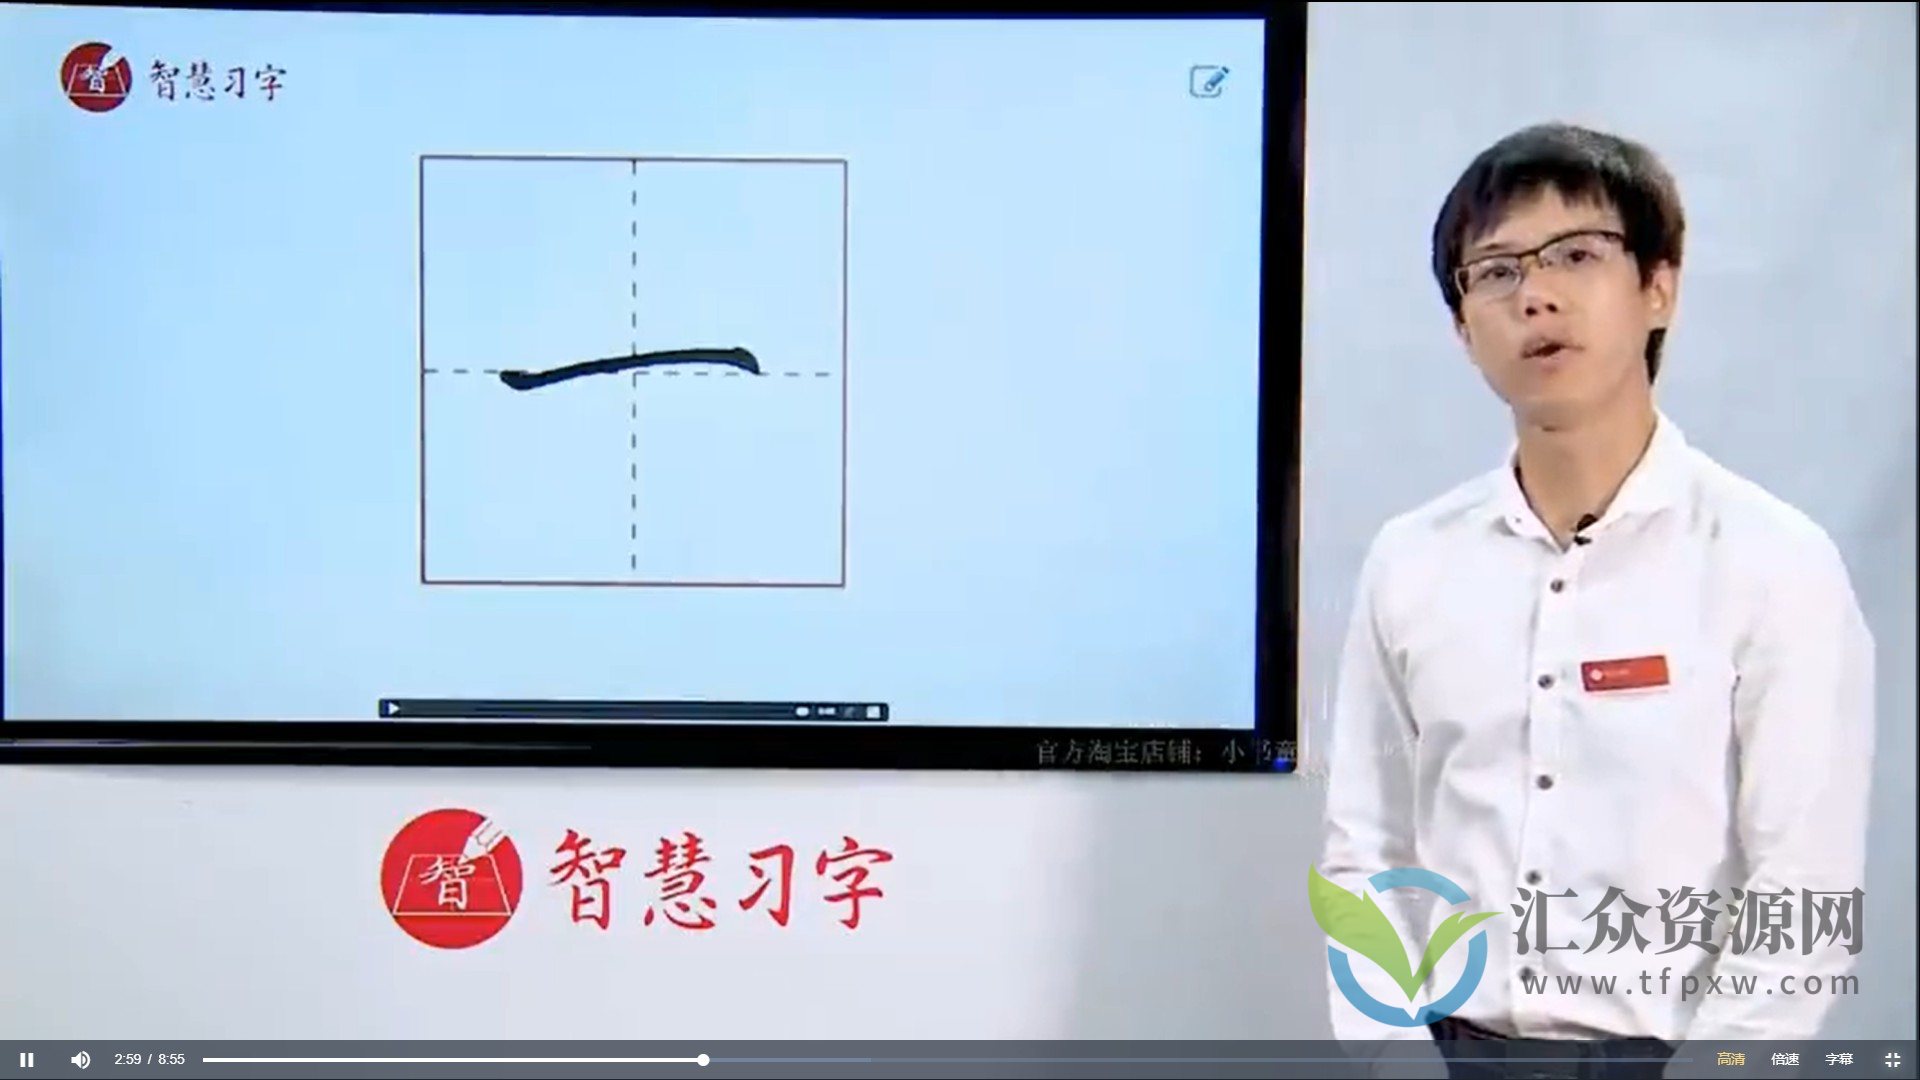 王慧志硬笔书法私房课程 28+72节视频教程插图1